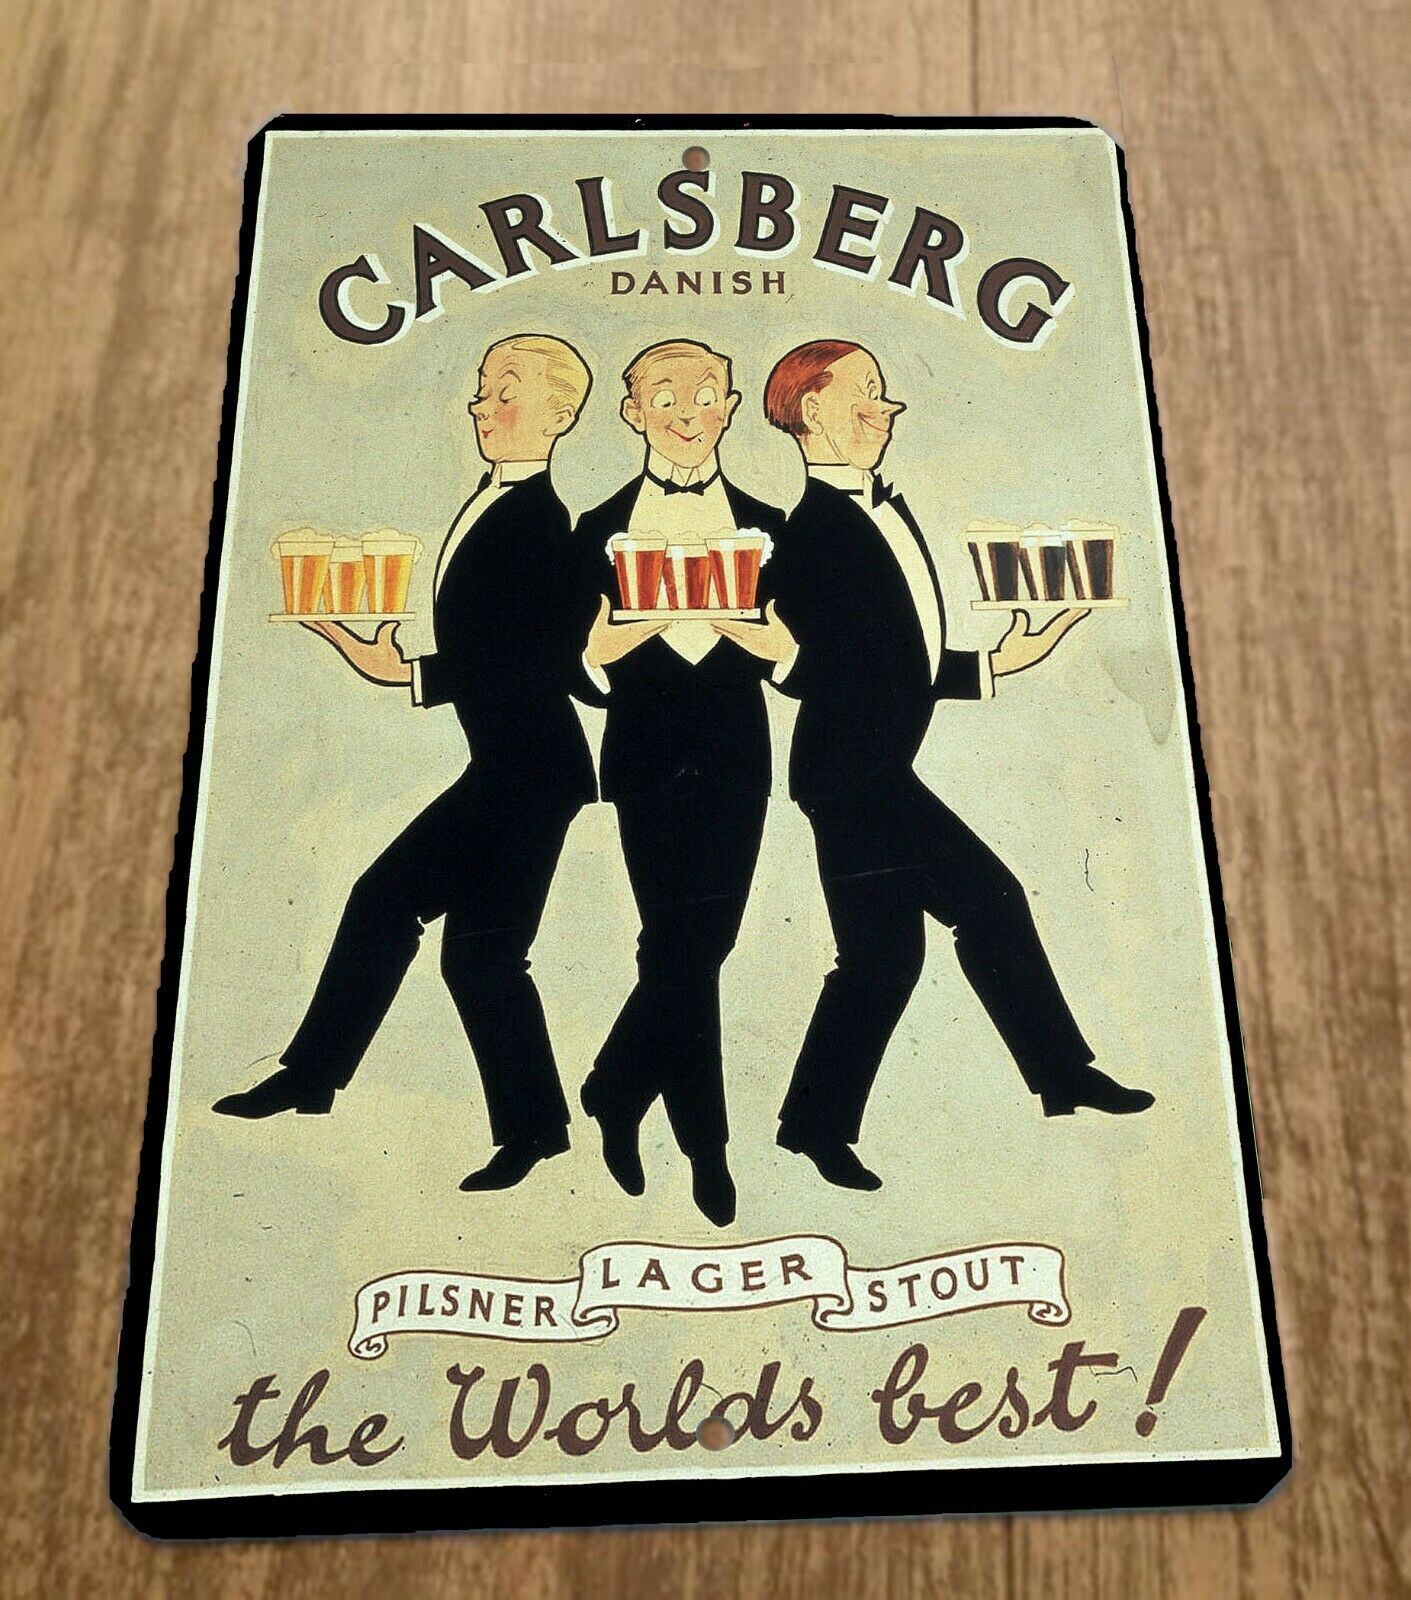 Carlsberg Danish Worlds Best 8x12 Metal Wall Vintage Beer Bar Sign Pilsner Lager